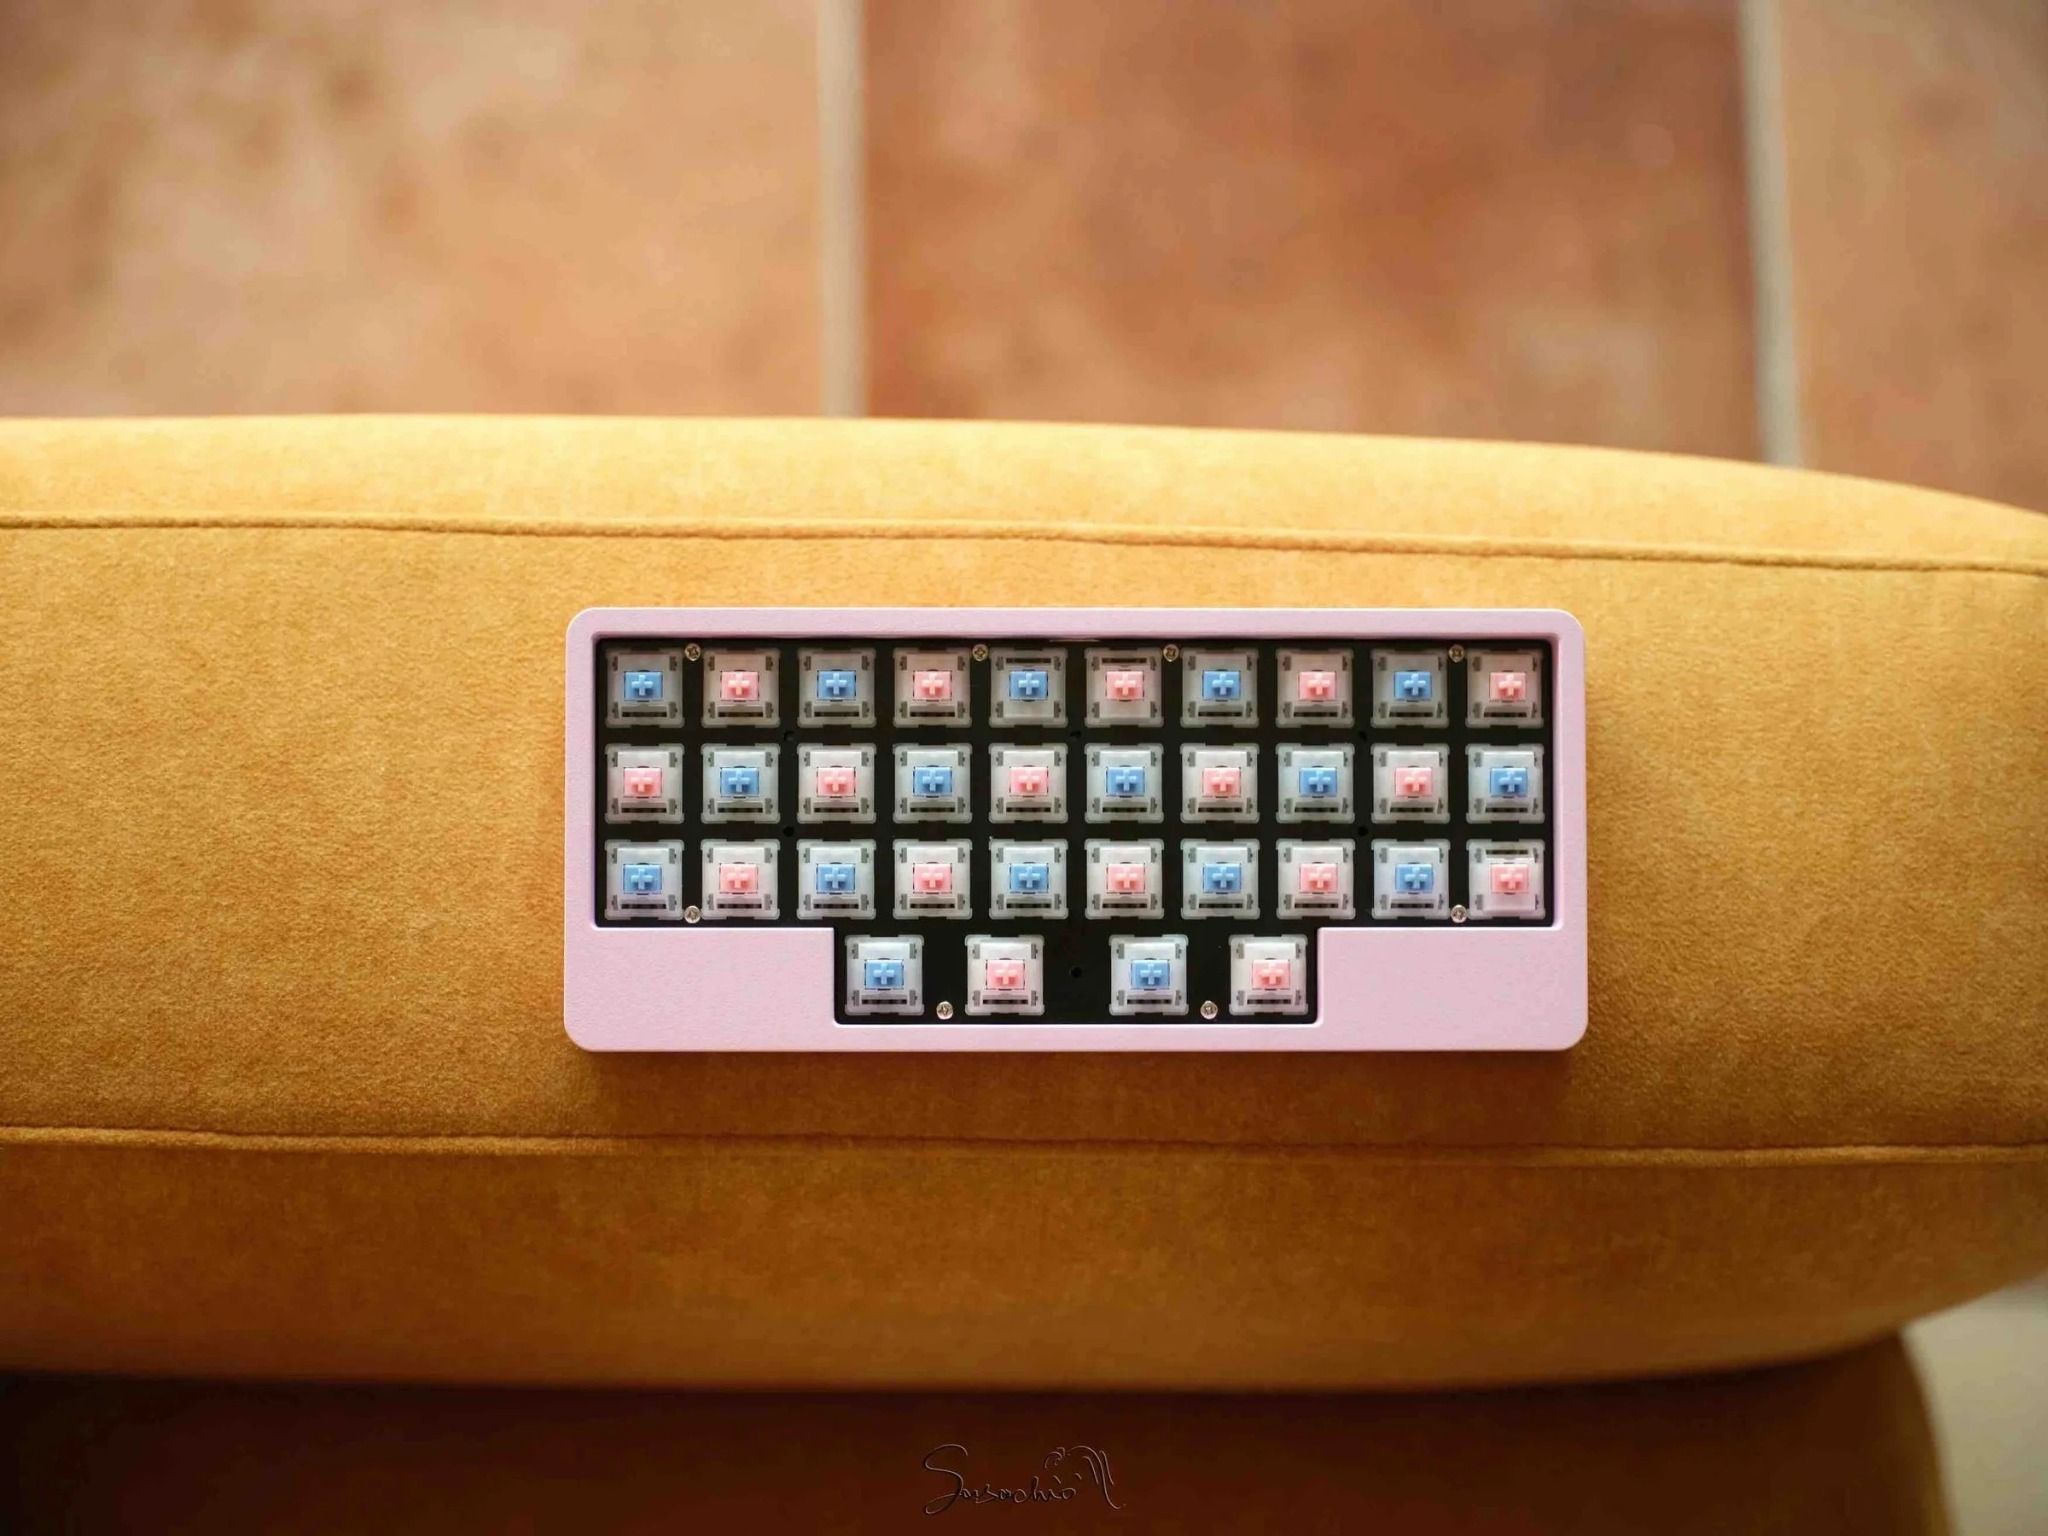  J34 Keyboard Kit 